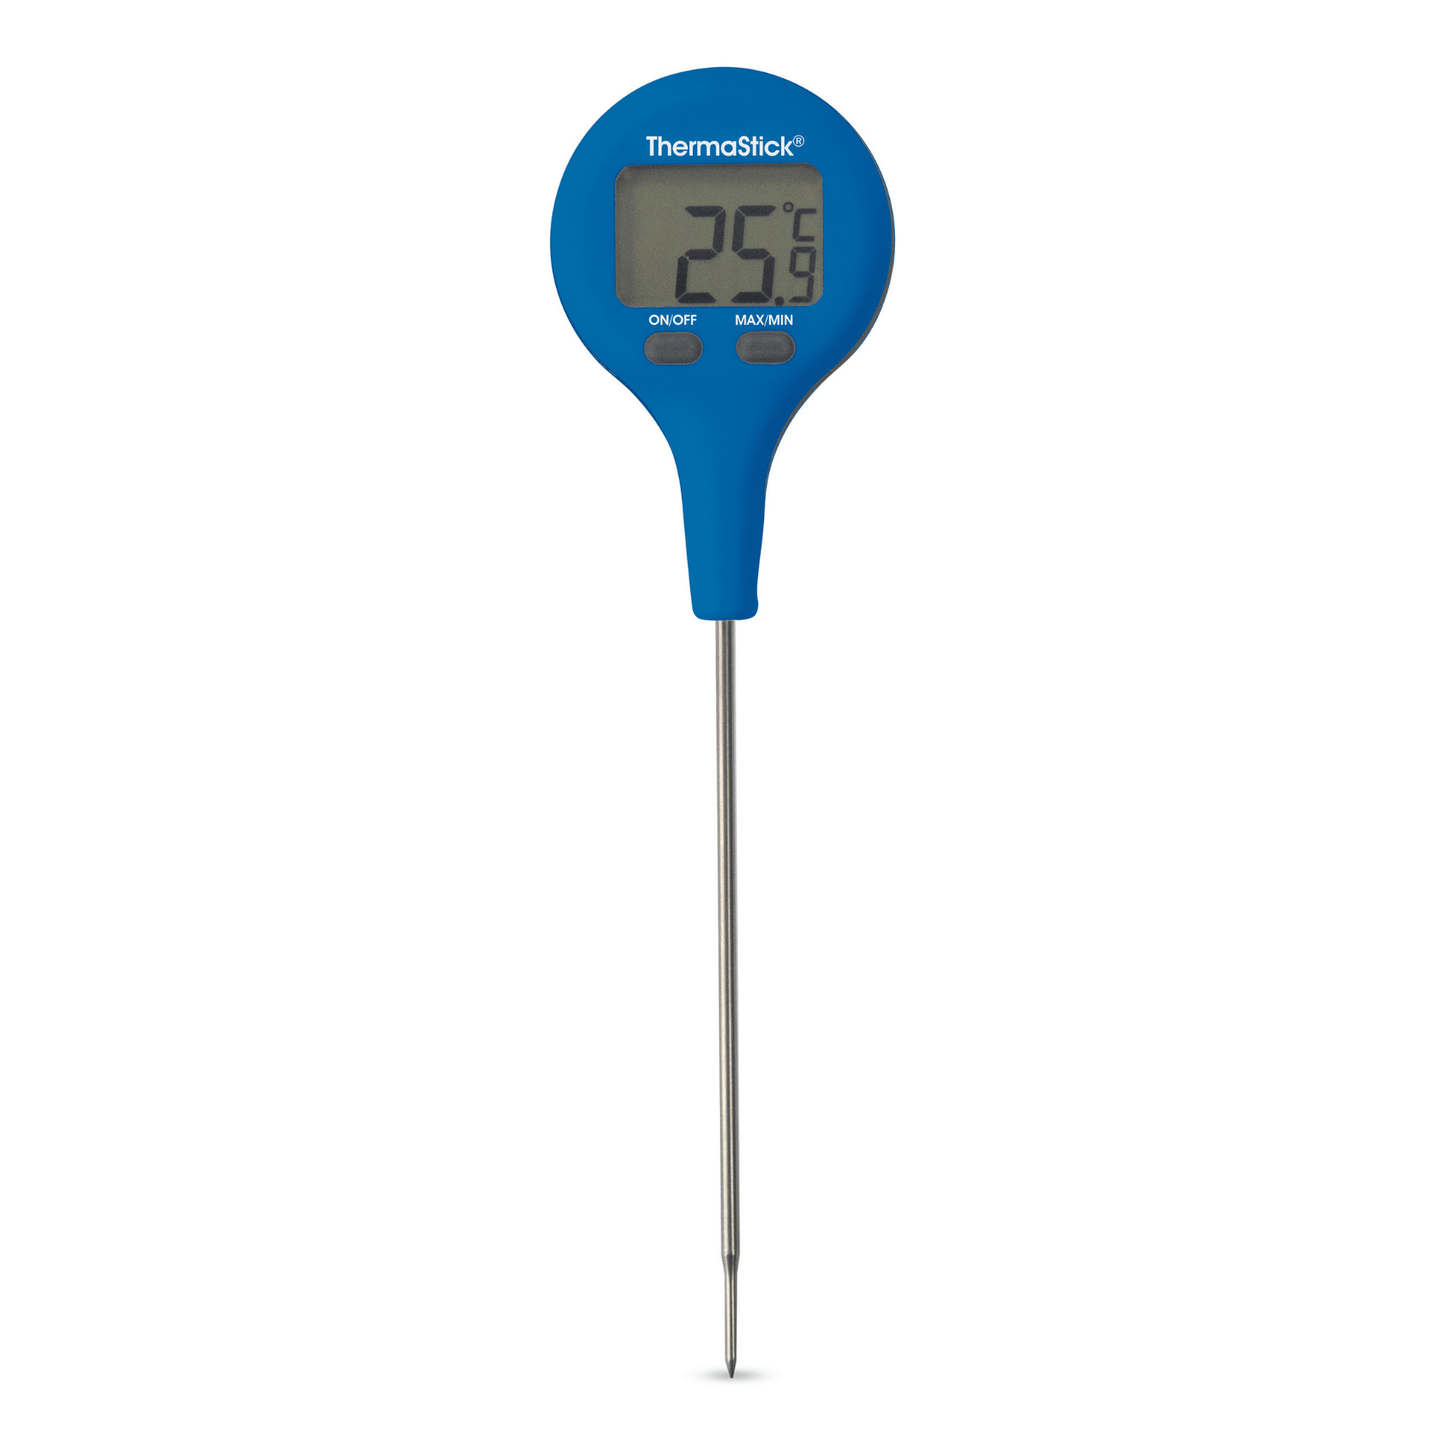 un thermomètre numérique Thermometre.fr ThermaStick bleu sur fond blanc.